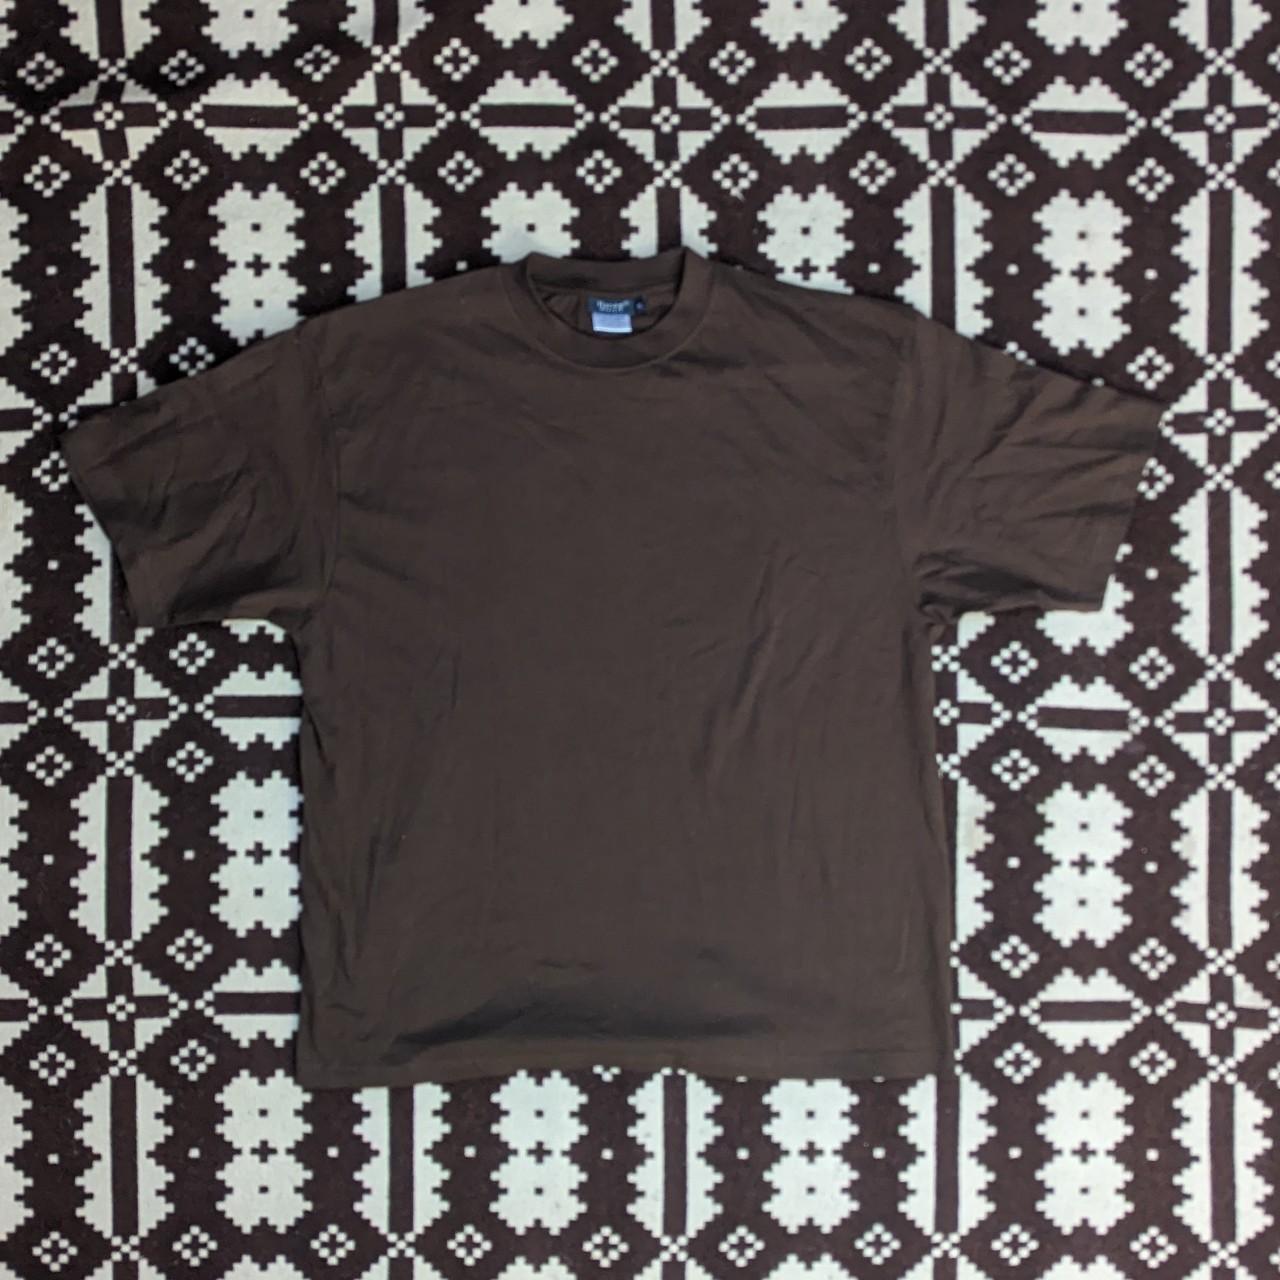 Hanes Men's Brown T-shirt | Depop